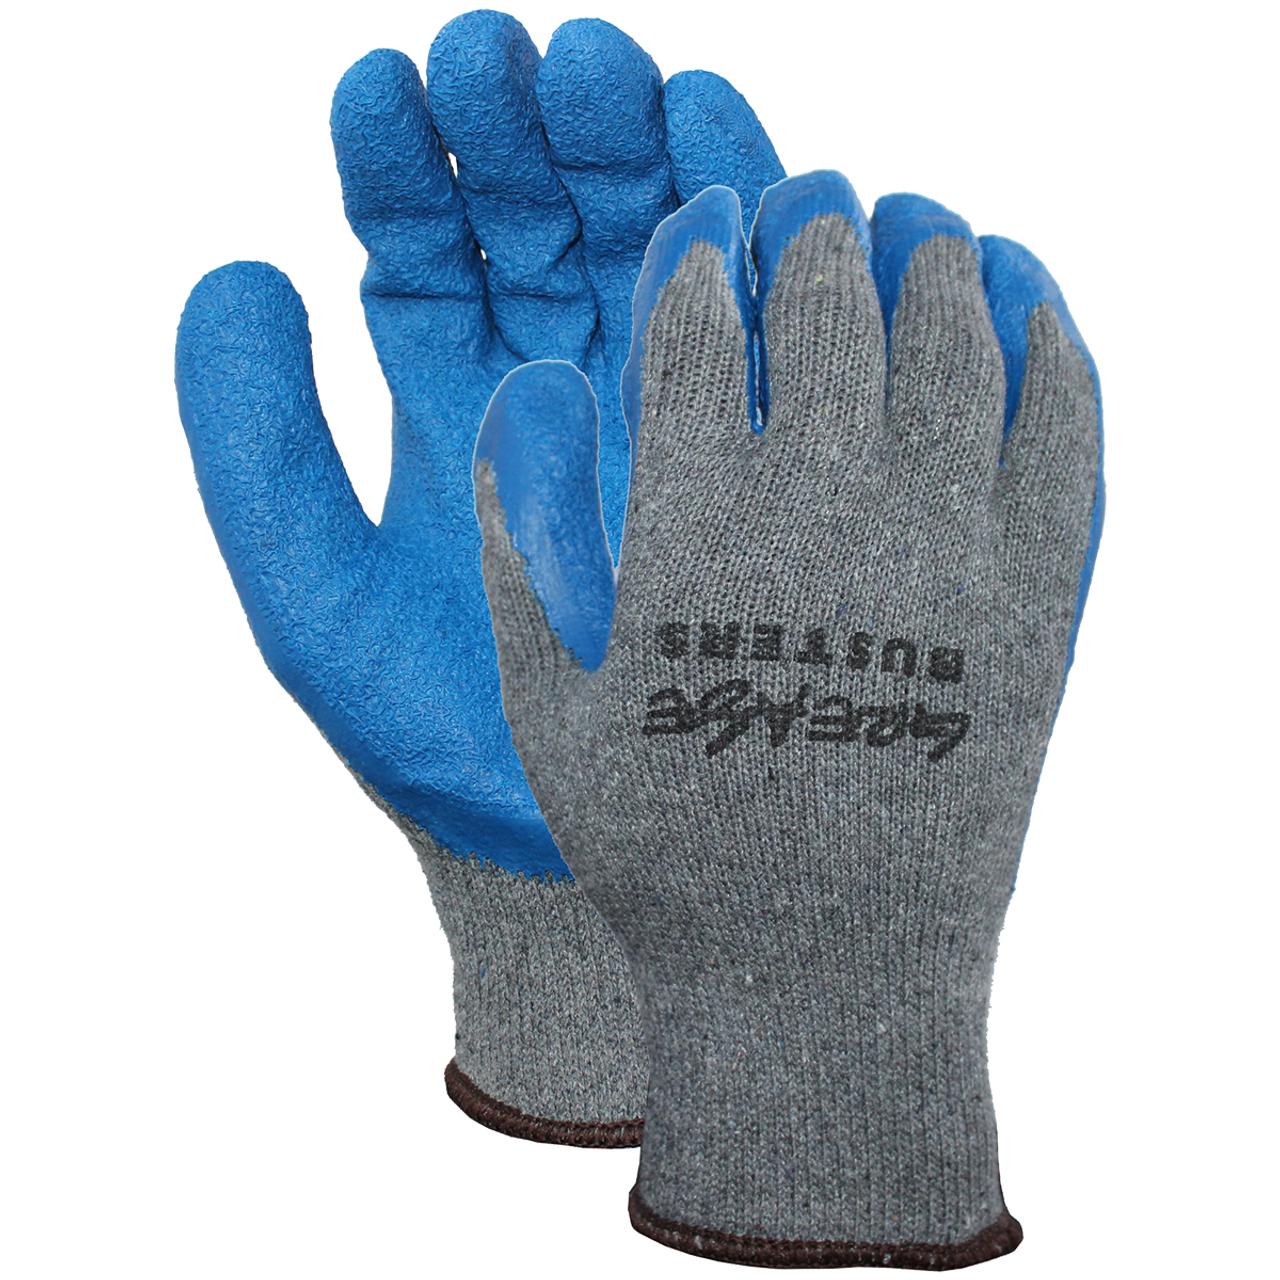 GRX Blue Latex Crinkle Industrial Gloves